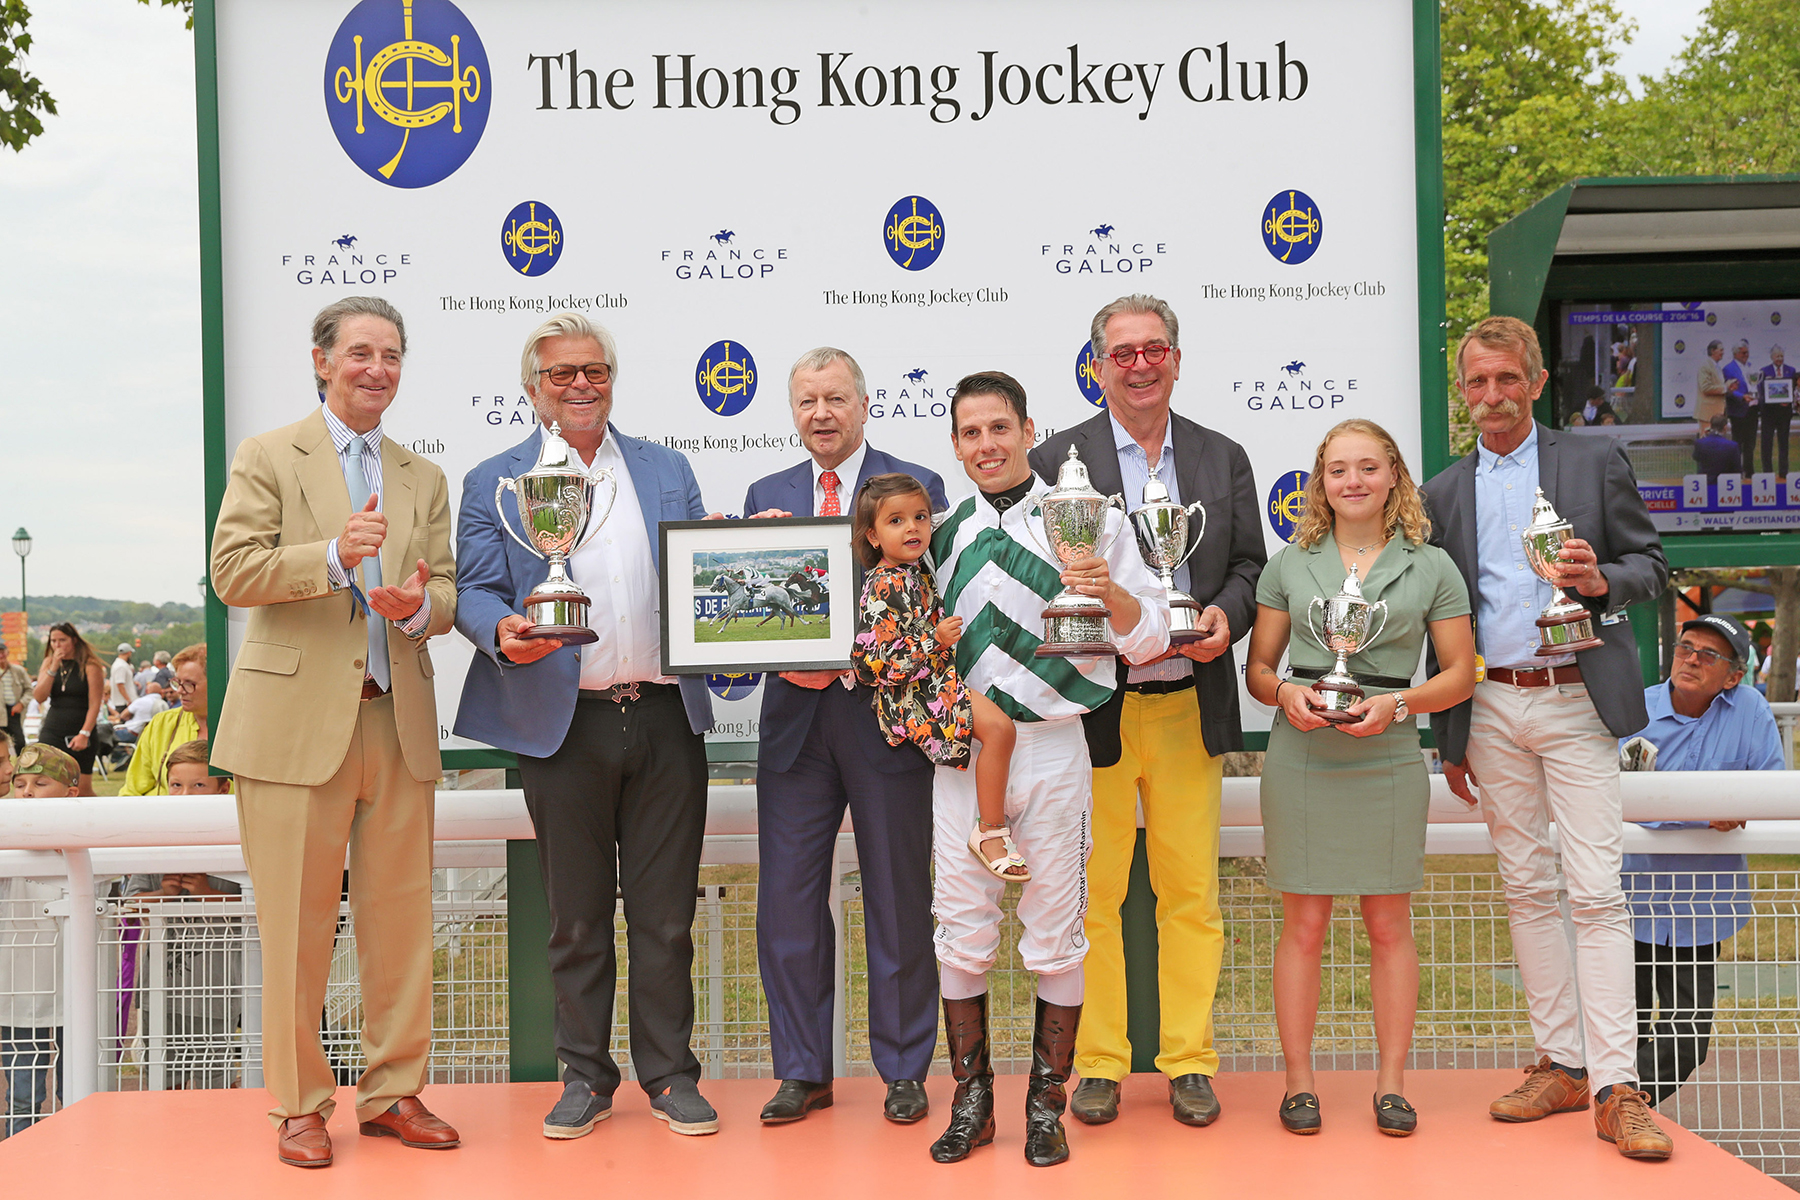 香港賽馬會行政總裁應家柏（左三）頒發獎盃予香港賽馬會拜倫錦標頭馬「壯駒」的馬主及騎練後，與法國賽馬會主席Edouard De Rothschild（左一）、得勝馬主Jean-Pierre Barjon (左二)、練馬師盧傑 (右三)、騎師杜滿樂 (右四)、策騎員Céline Singery (右二)及育馬者Pierre Talvard (右一) 合照。